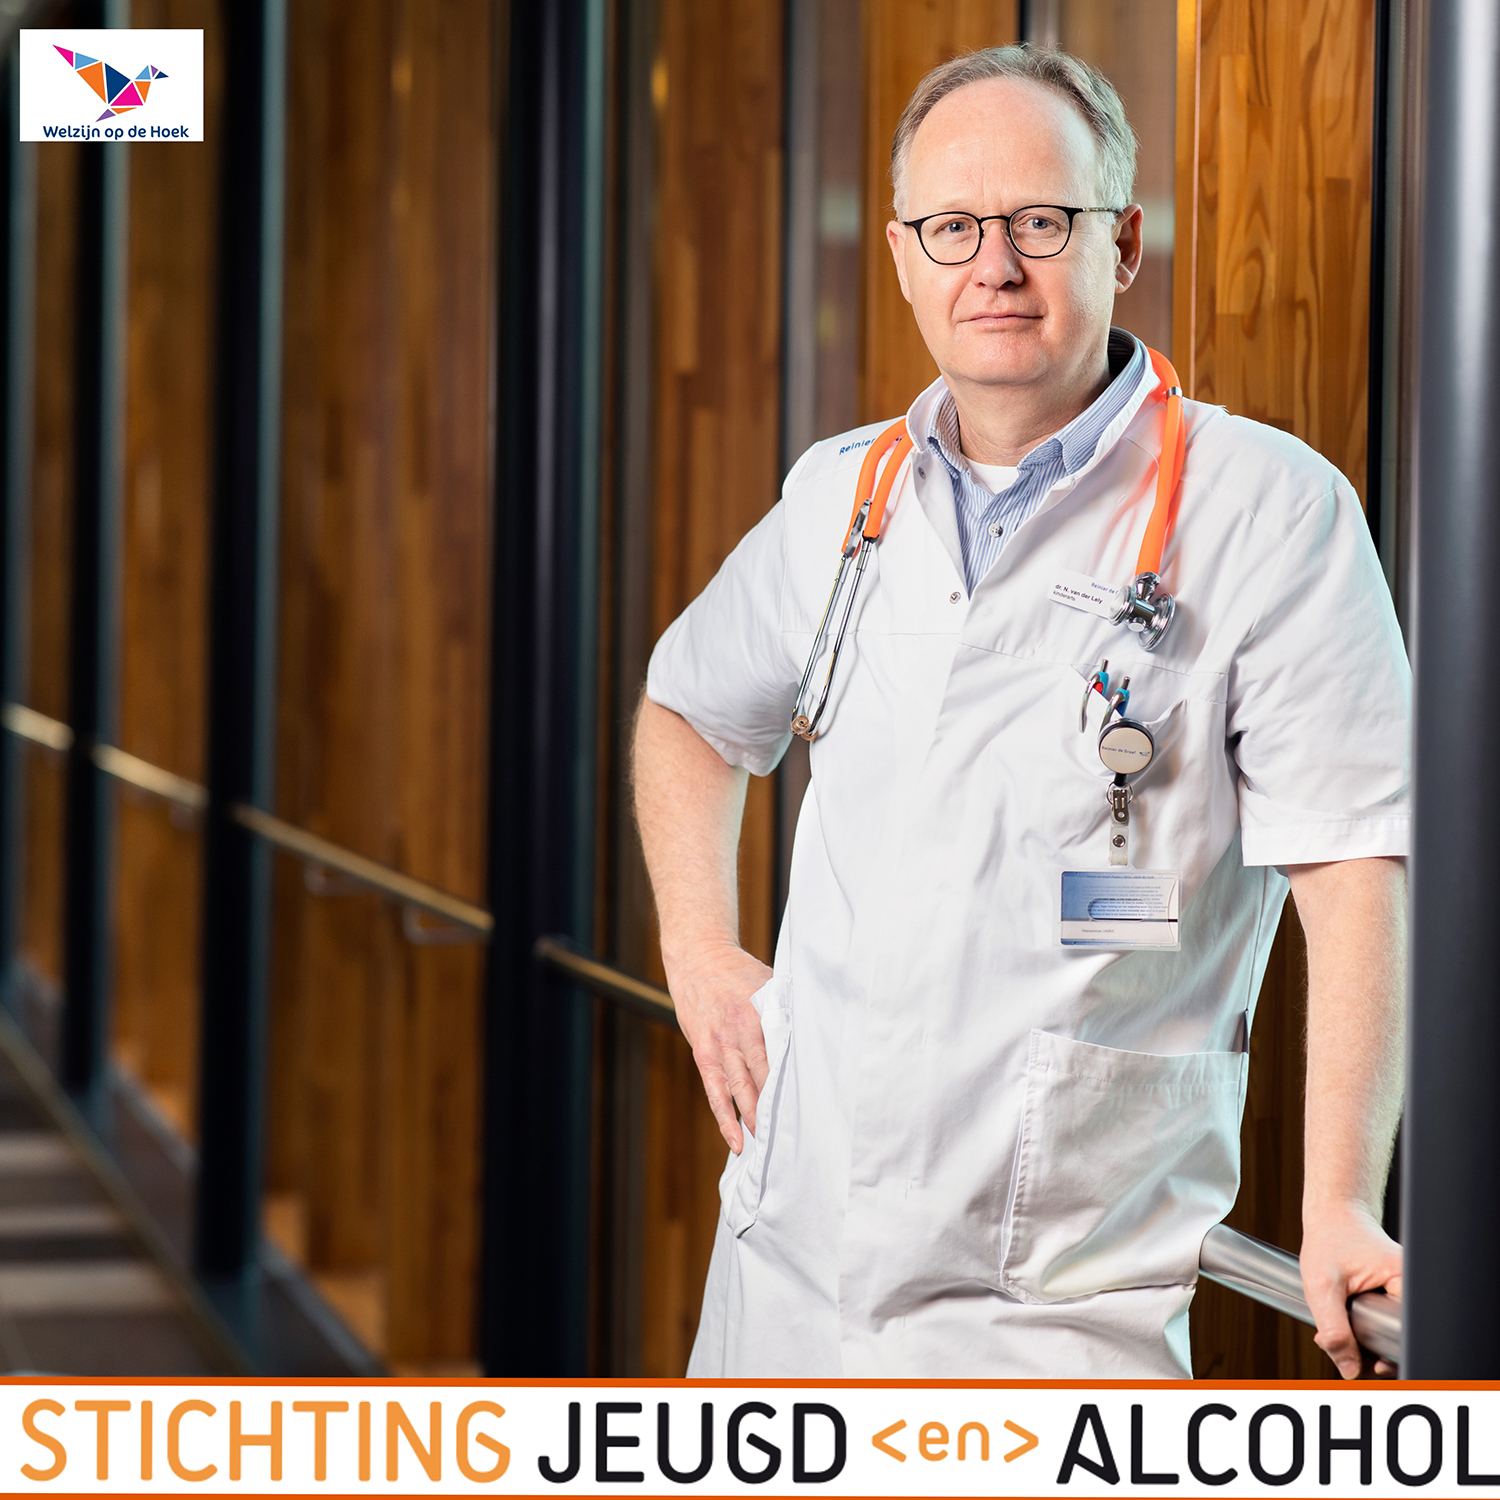 Lezing Dr. Nico van der Lely – “Jeugd en Alcohol”